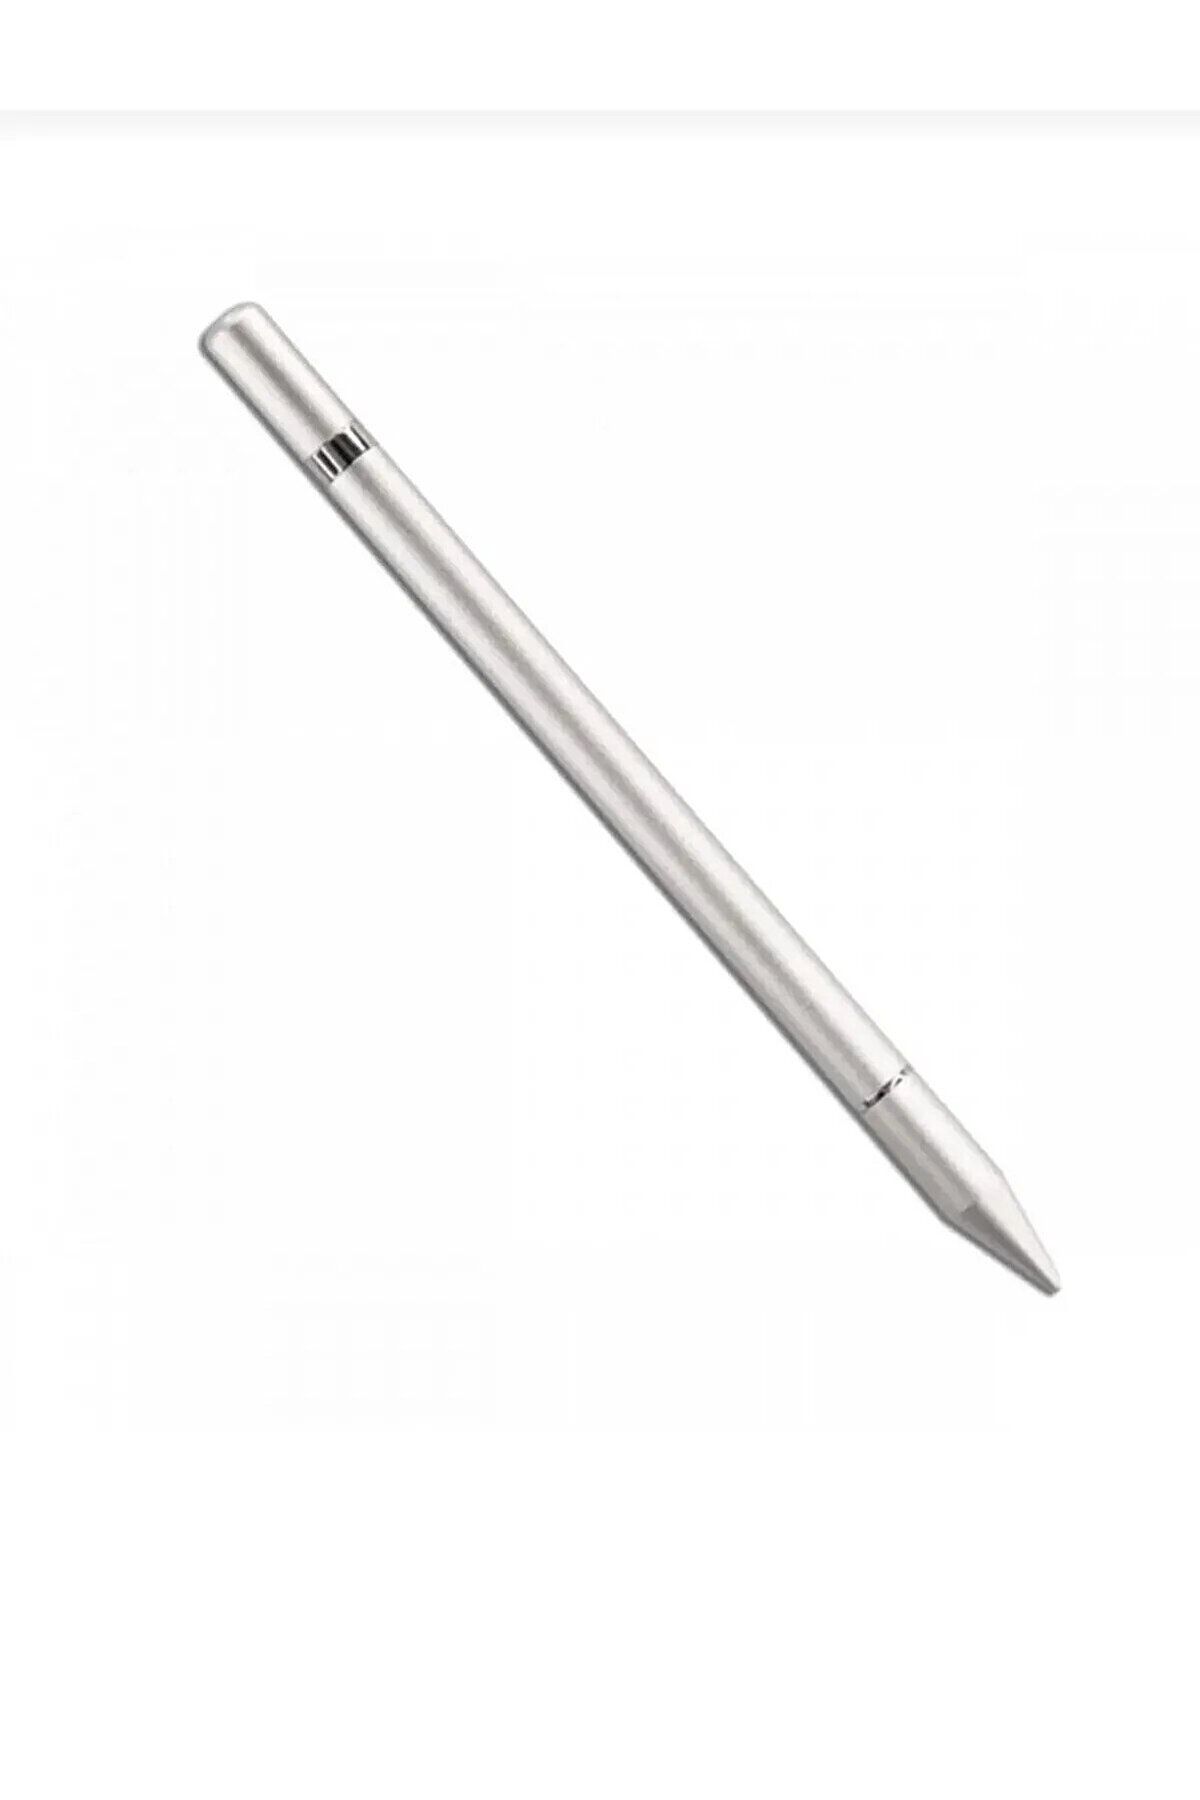 İncisoft İpad-İphone-Samsung-Huawei-Honor Uyumlu Tablet Dokunmatik Çizim Yazı Kalemi Pencil 2 in 1 Disk Uçlu